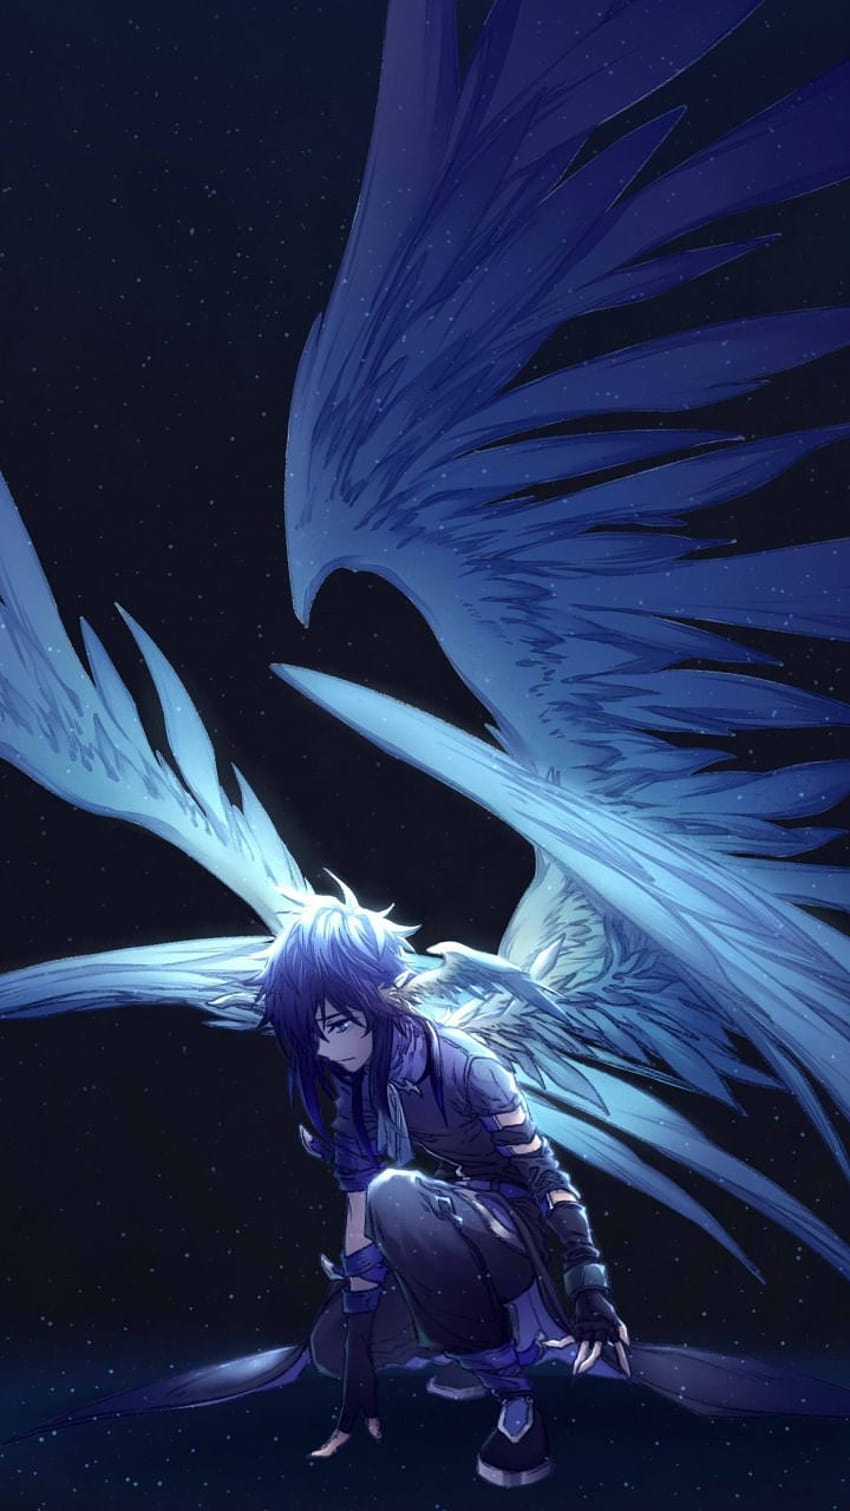 Angel Fantasy Anime: Những thiên thần sẽ đưa bạn đến một thế giới đầy mơ mộng và kỳ lạ. Bạn sẽ được chiêm ngưỡng những cảnh quan tuyệt đẹp và khám phá sức mạnh đáng kinh ngạc của những vị thiên thần này.